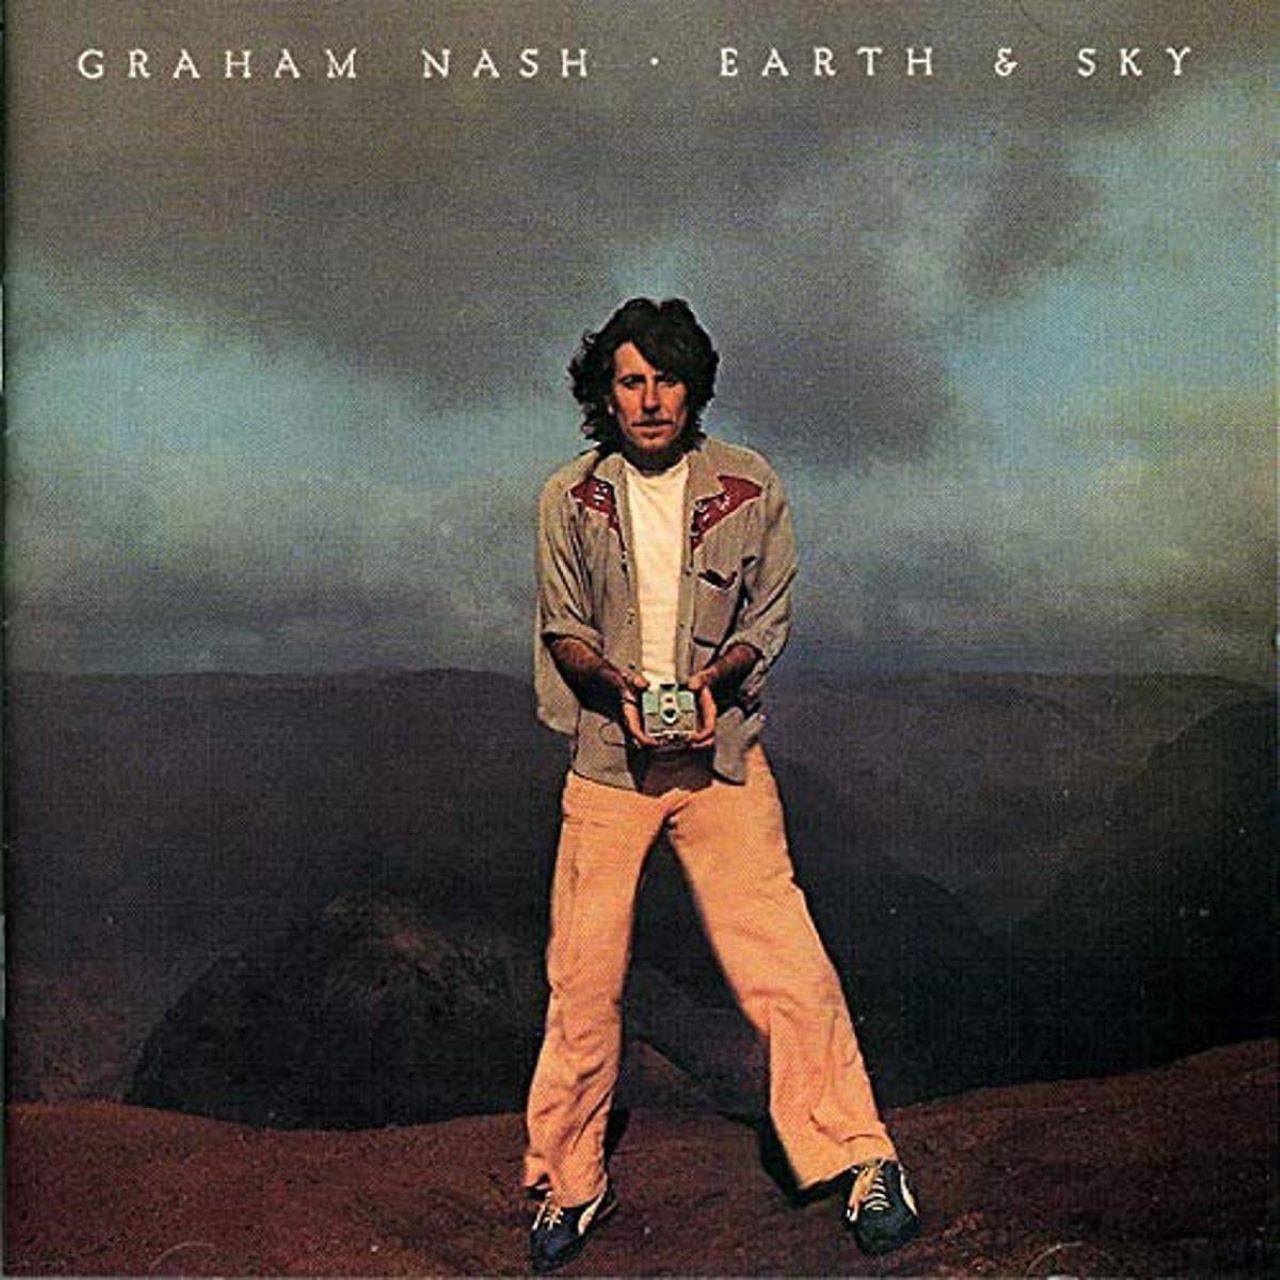 Graham Nash - Earth & Sky cover album